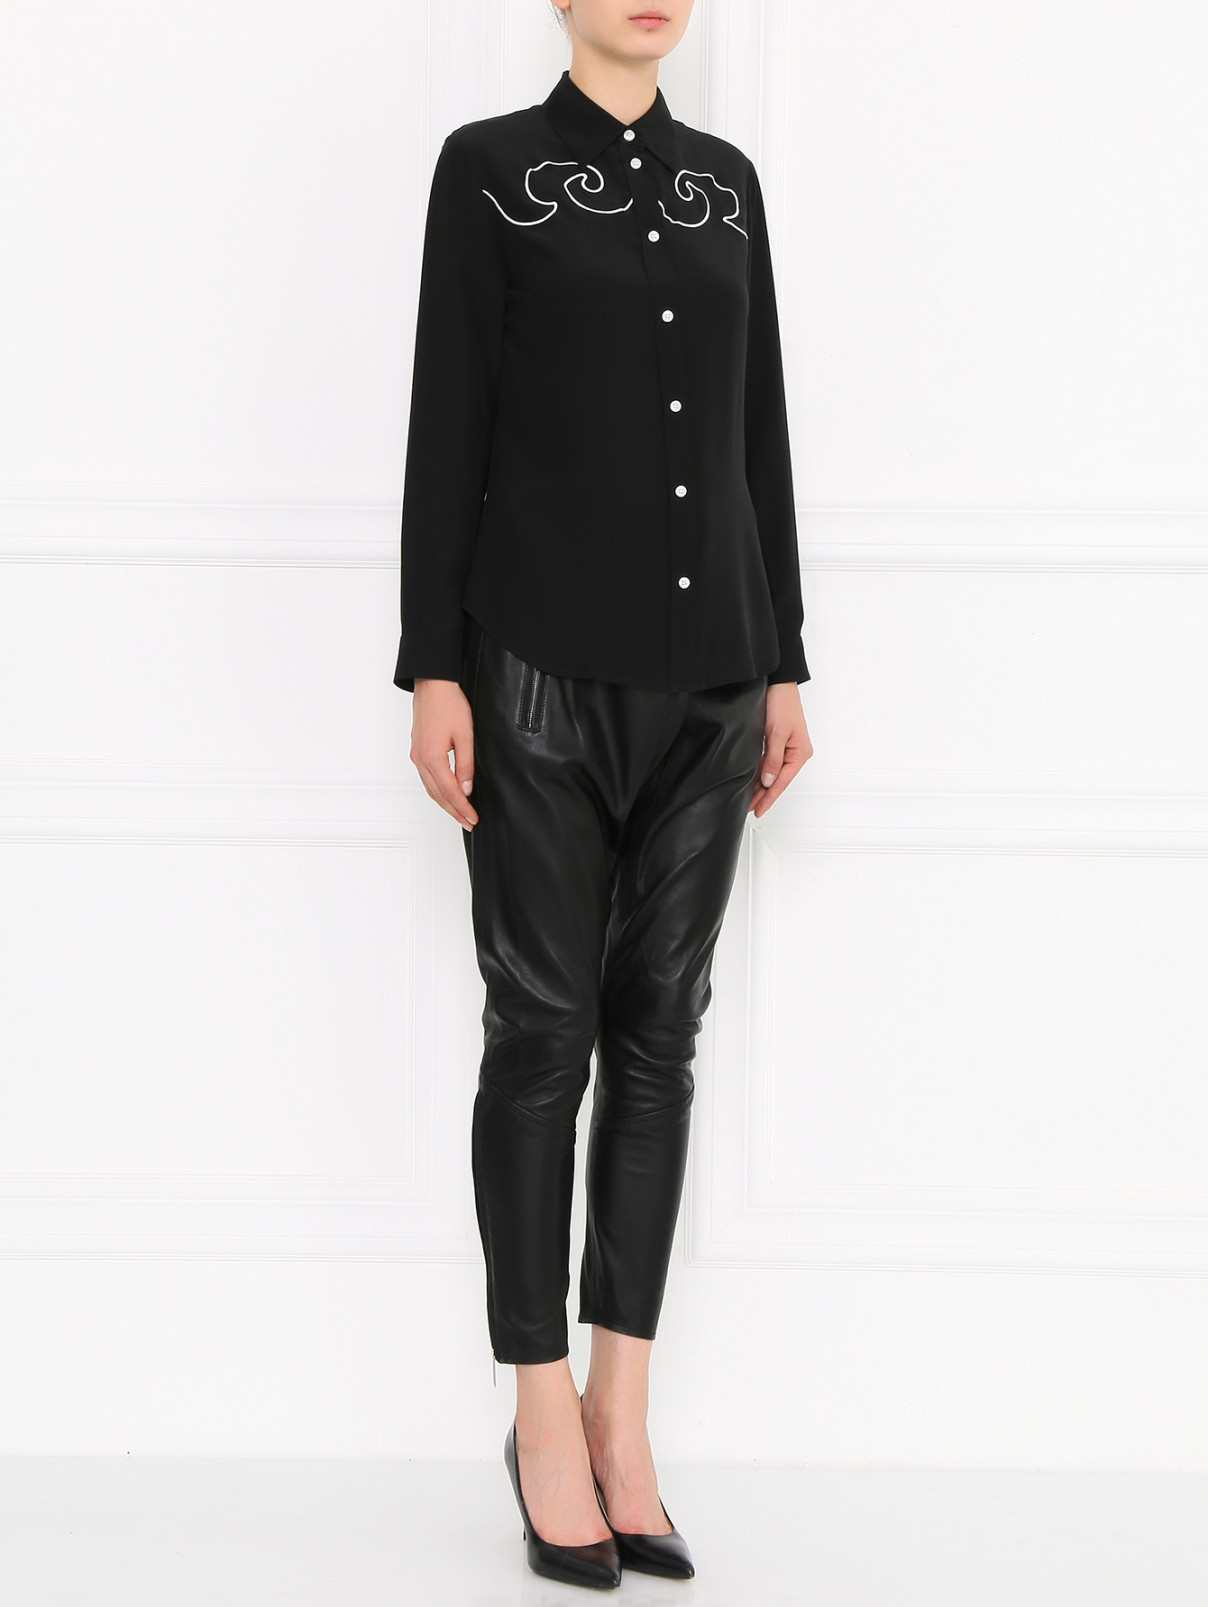 Блуза из шелка с вышивкой Moschino Cheap&Chic  –  Модель Общий вид  – Цвет:  Черный